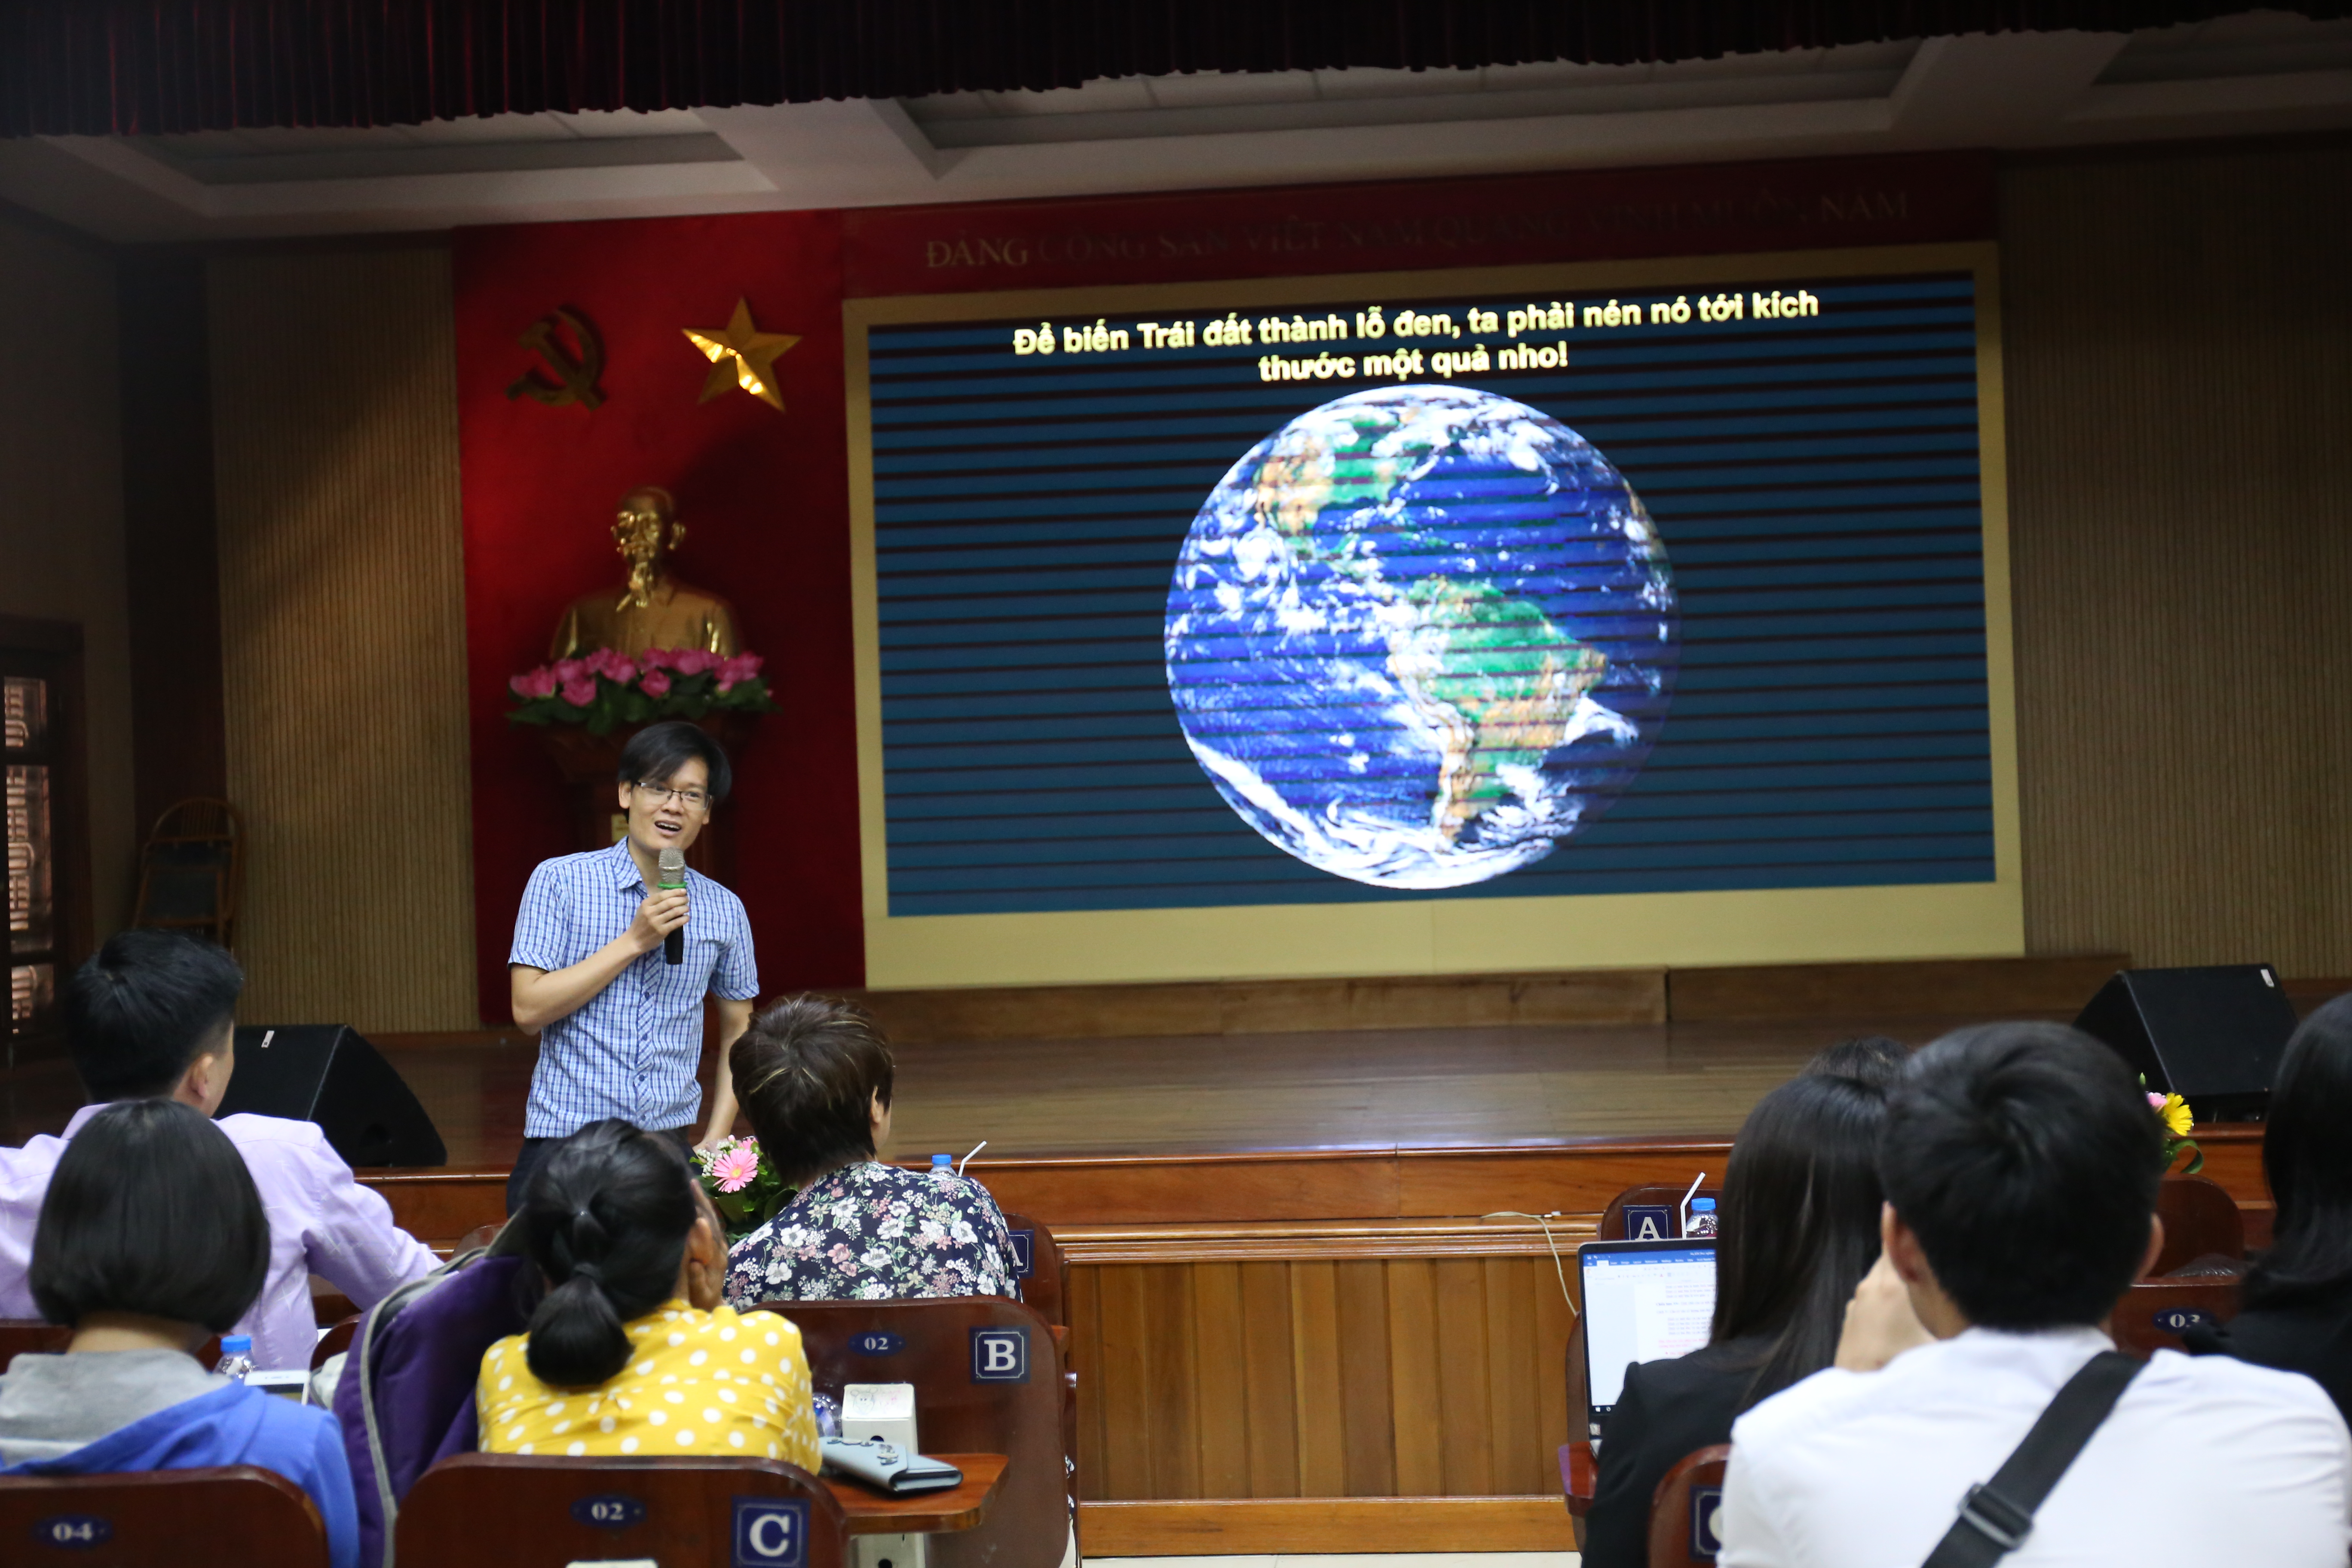 Bài giảng "Hố đen" của TS.Phạm Anh Tuấn, VAST, thu hút được nhiều sự chú ý | Ảnh: Ngô Hà